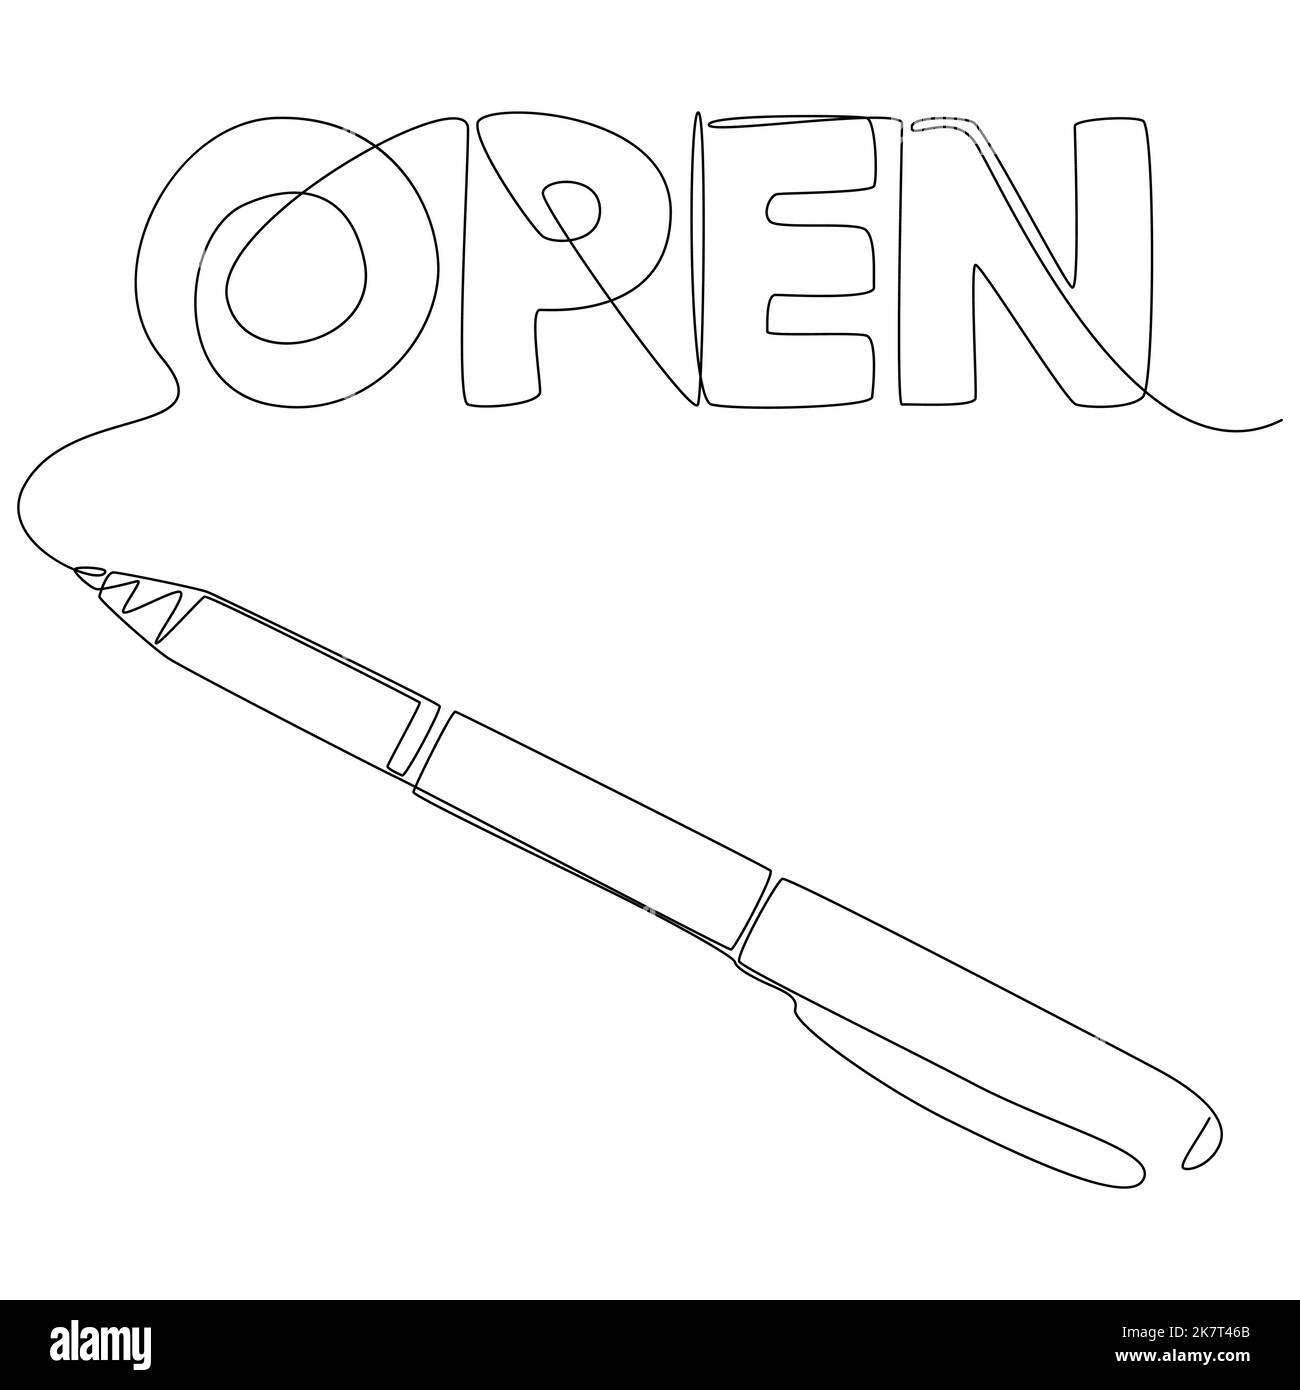 Una linea continua di parola aperta scritta con una matita. Concetto di vettore di illustrazione a linea sottile. Disegno di contorno idee creative. Illustrazione Vettoriale